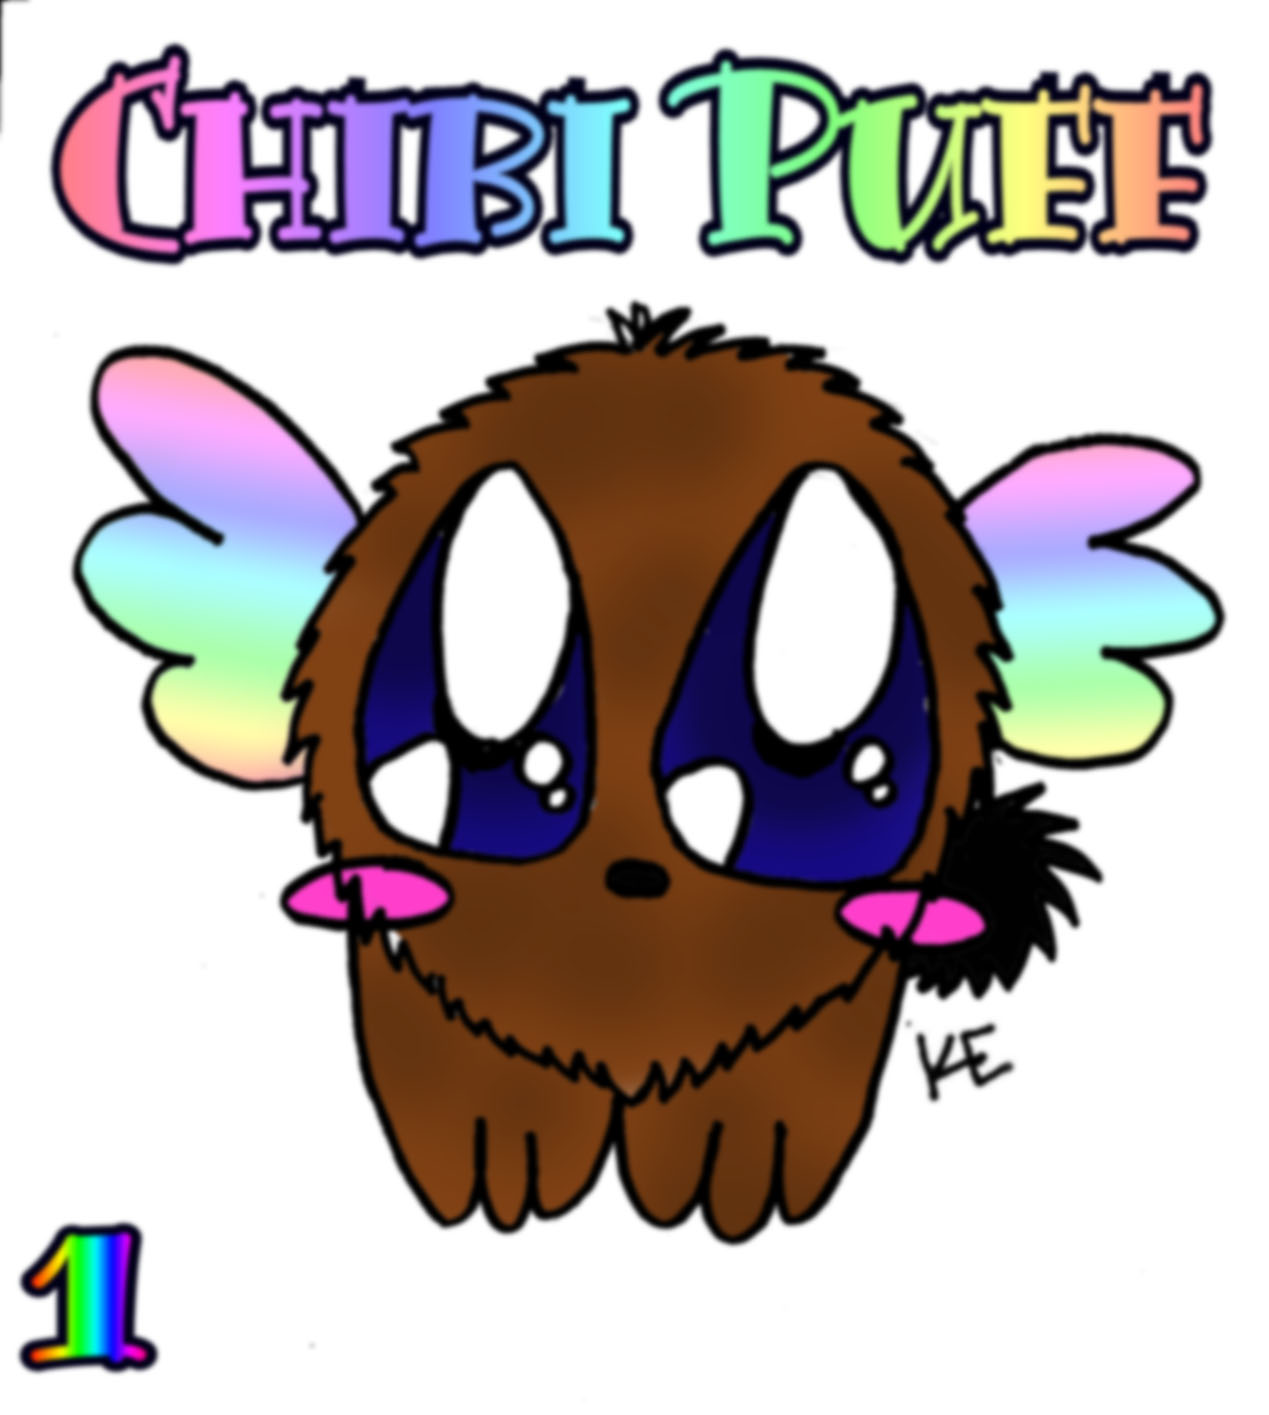 Chibi Puff by nekokekewolf